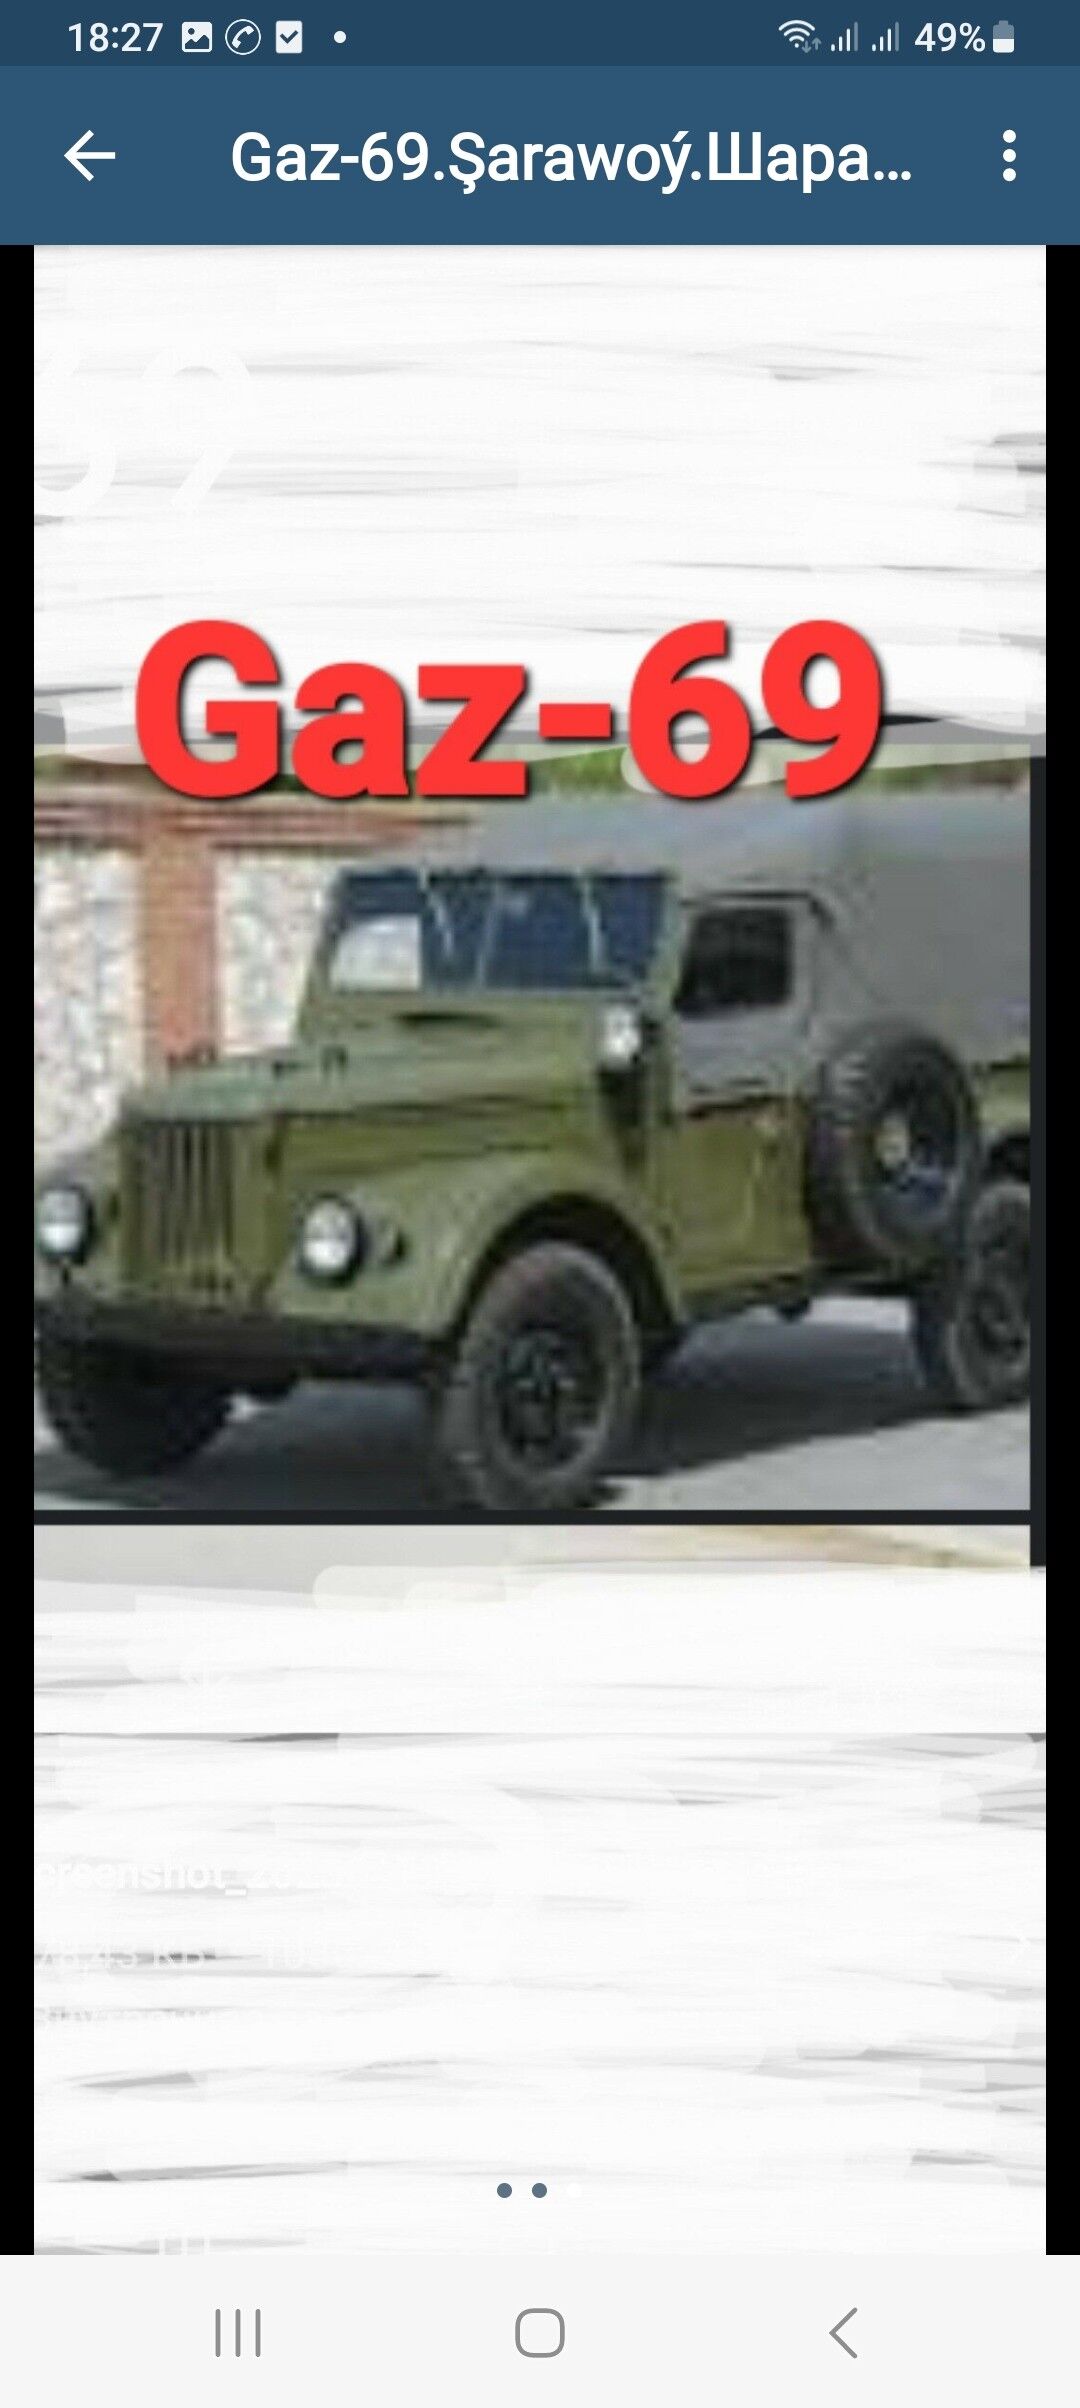 Gaz.69.Çerwák ruLewoý 250 TMT - Ruhabat (90-njy razýezd) - img 4